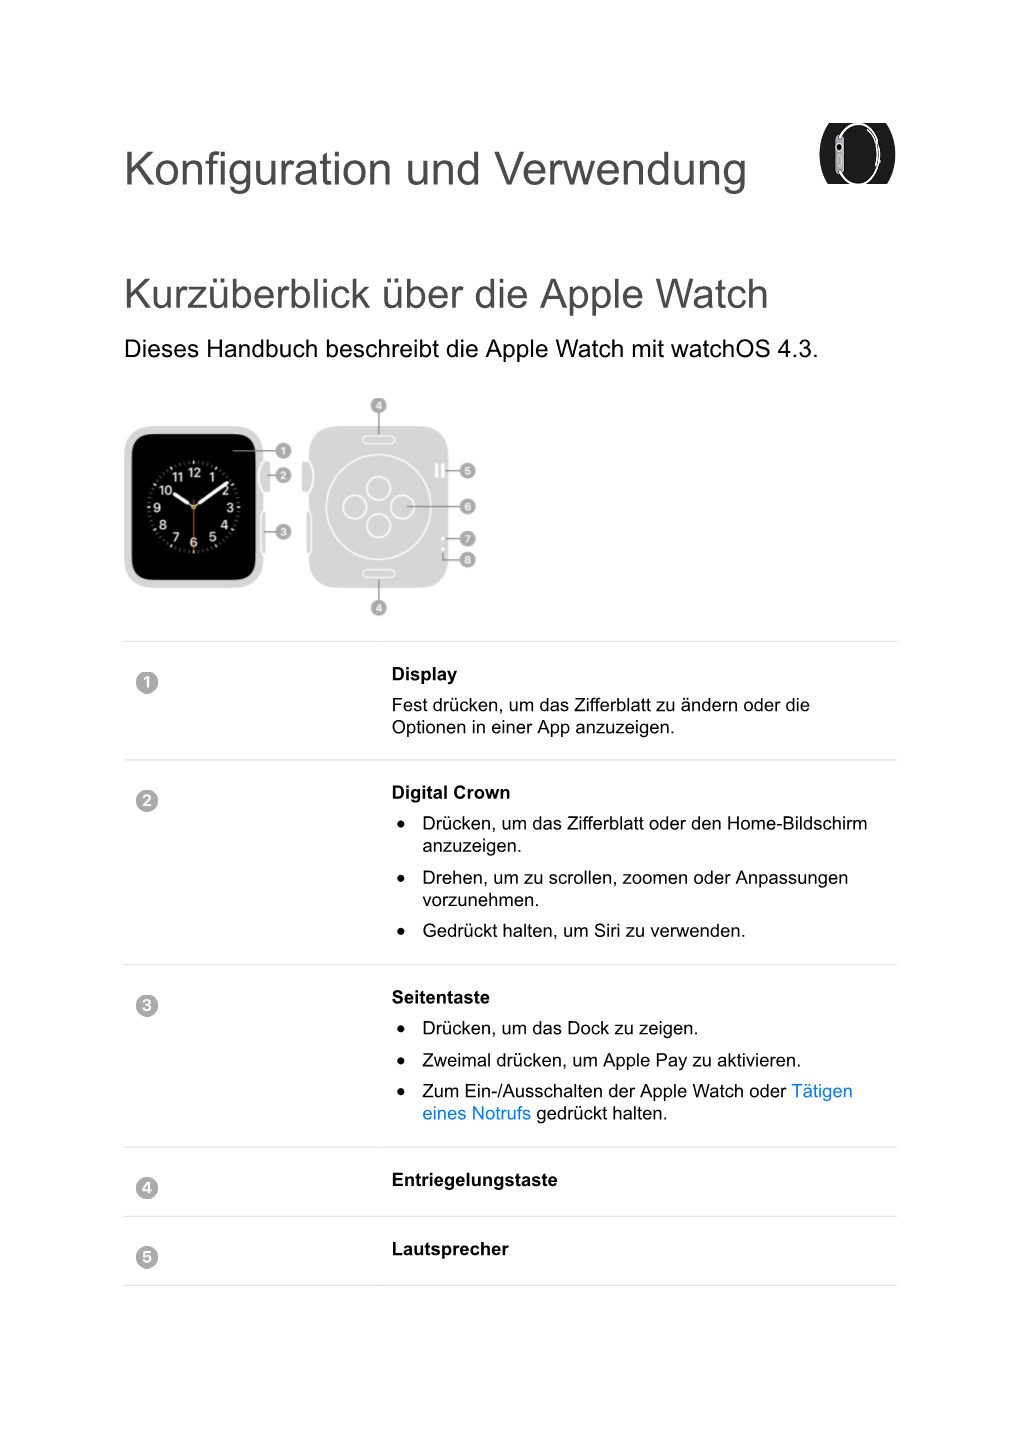 Apple Watch-Benutzerhandbuch Auf Dem Iphone in Der App „Apple Watch“, in Safari Oder in Ibooks Ansehen